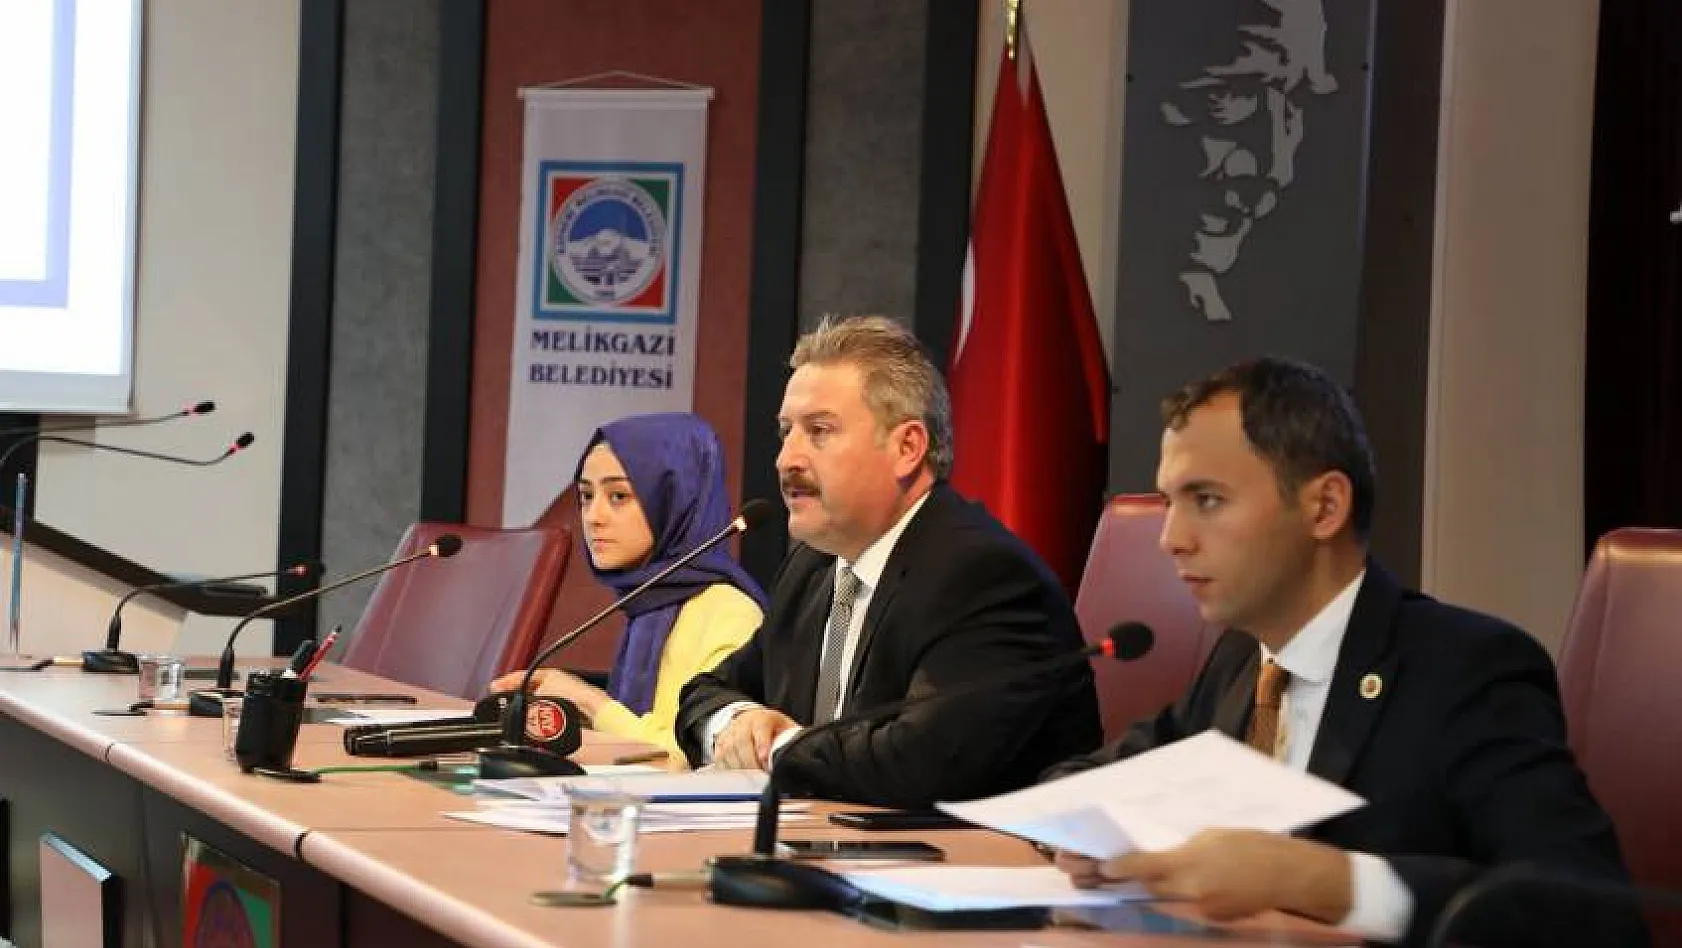  Palancıoğlu'dan 'TC Maliyeti artırır' savunması: Belediyemize ait tüm resmi yazışmalarda T.C. ibaresi bulunmaktadır